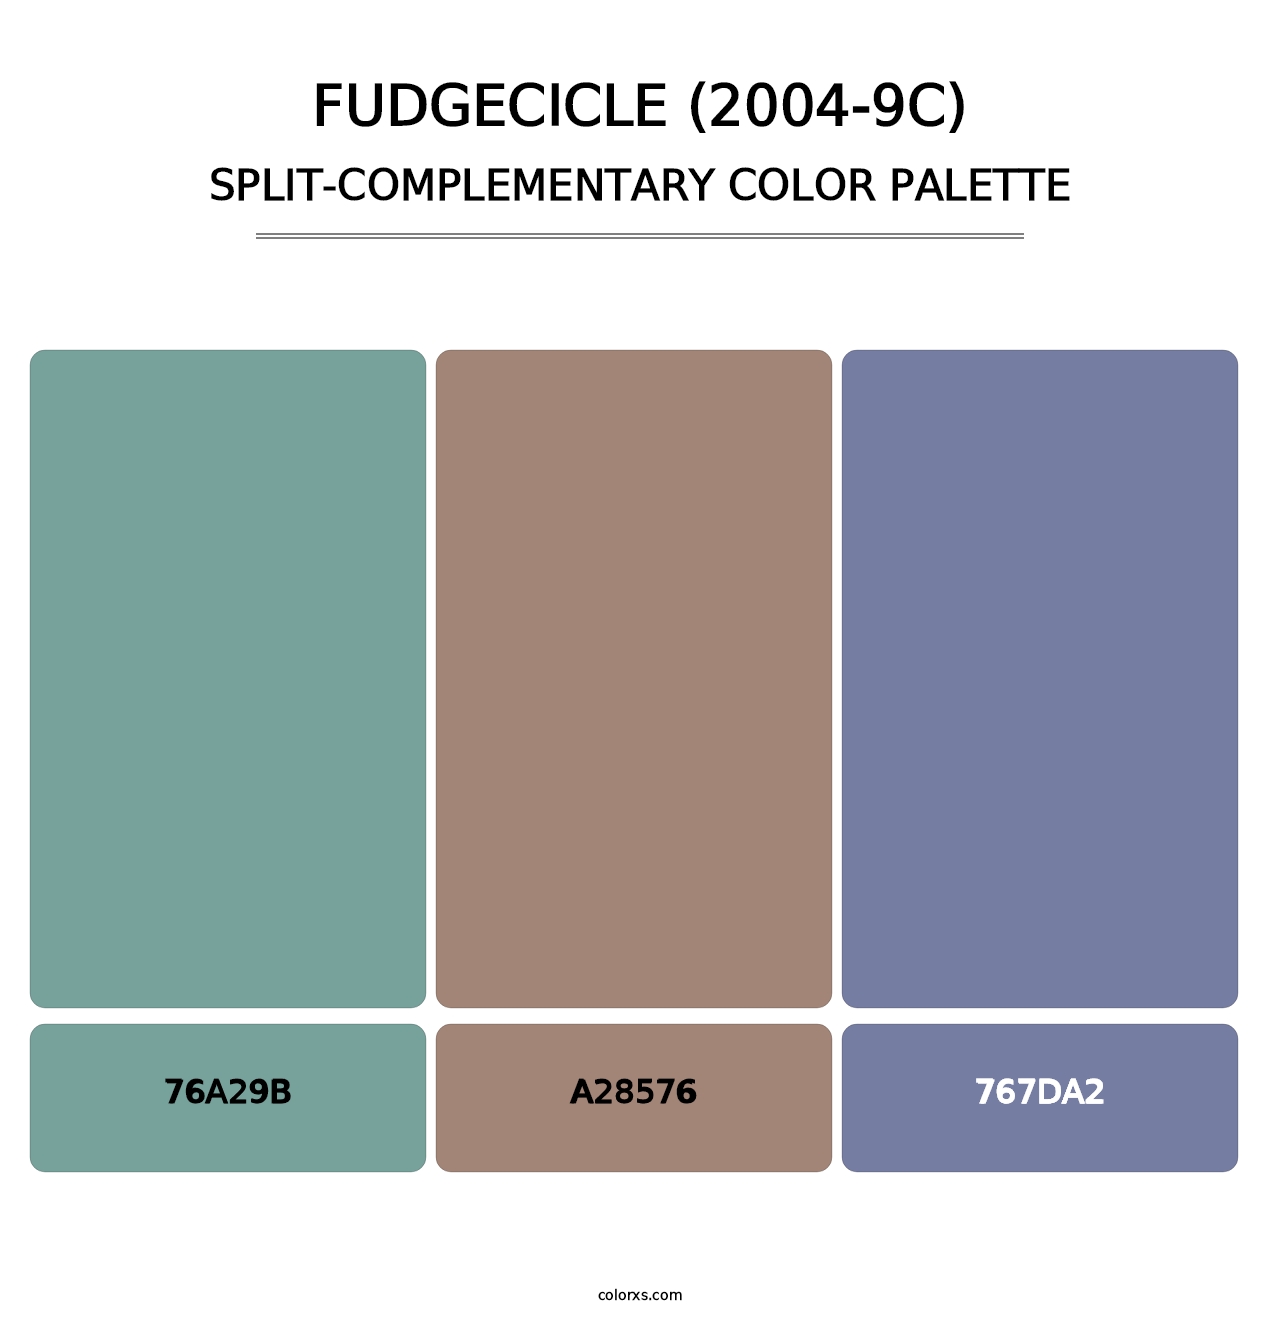 Fudgecicle (2004-9C) - Split-Complementary Color Palette